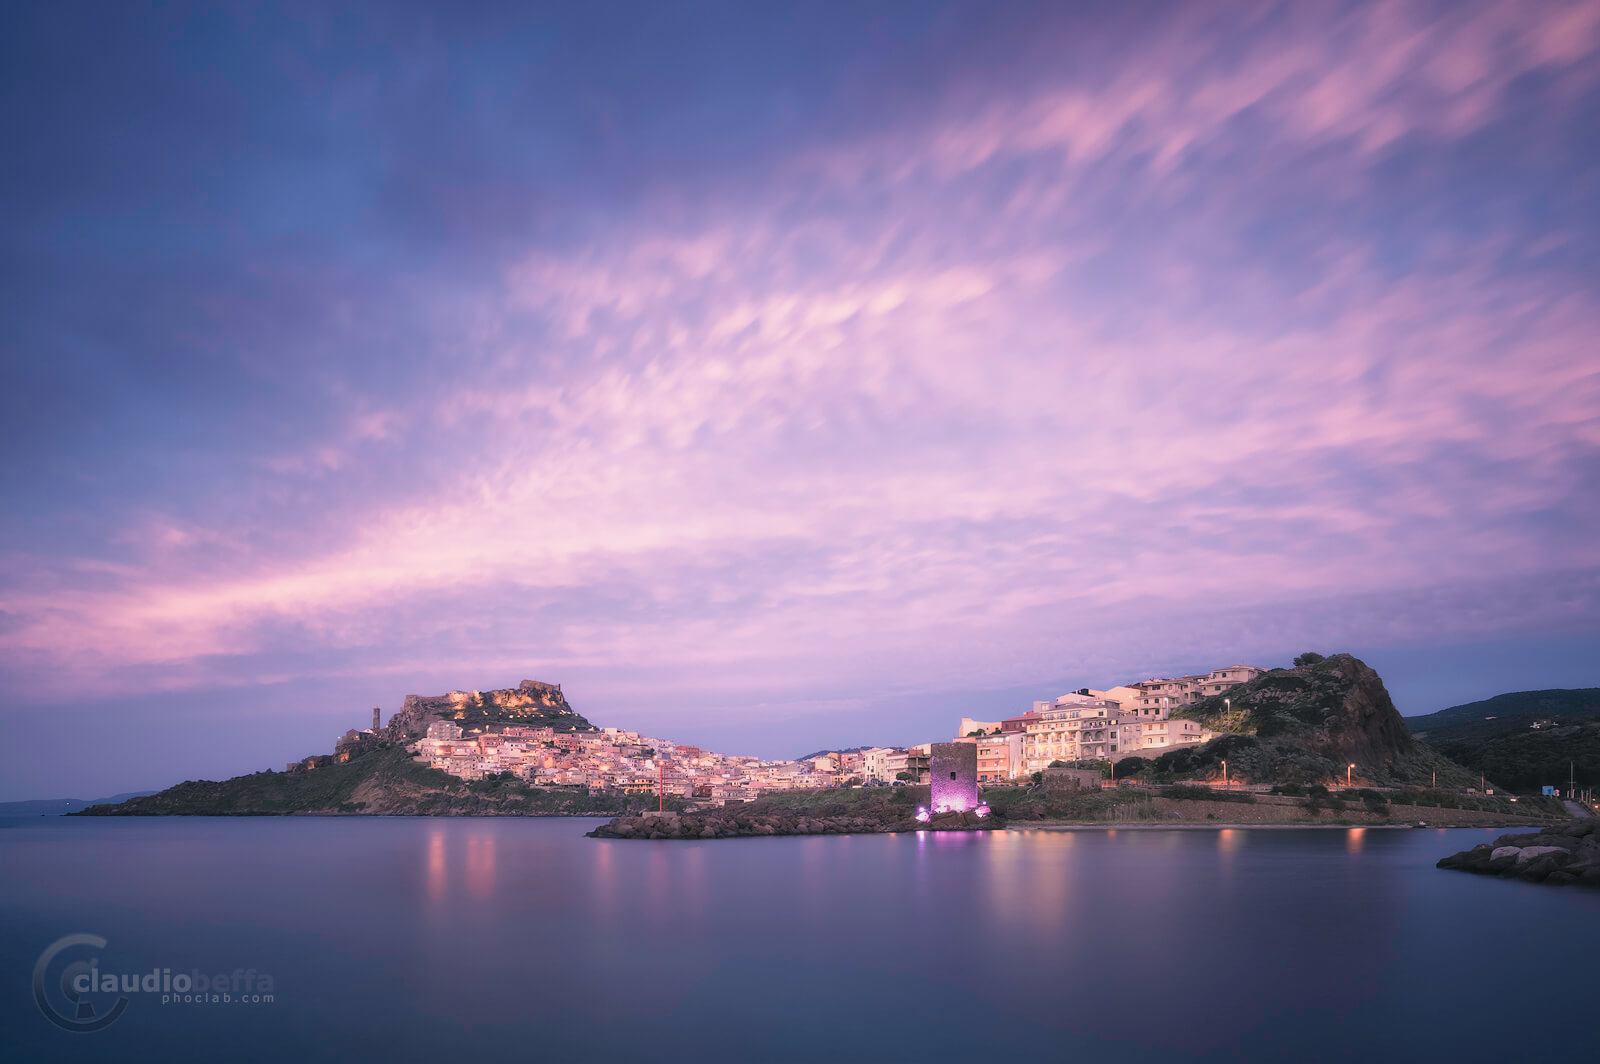 Castelsardo, Sardinia, Italy, Landscape, Seascape, Sunset, Blue hour, Town, Sea, Sky, Clouds